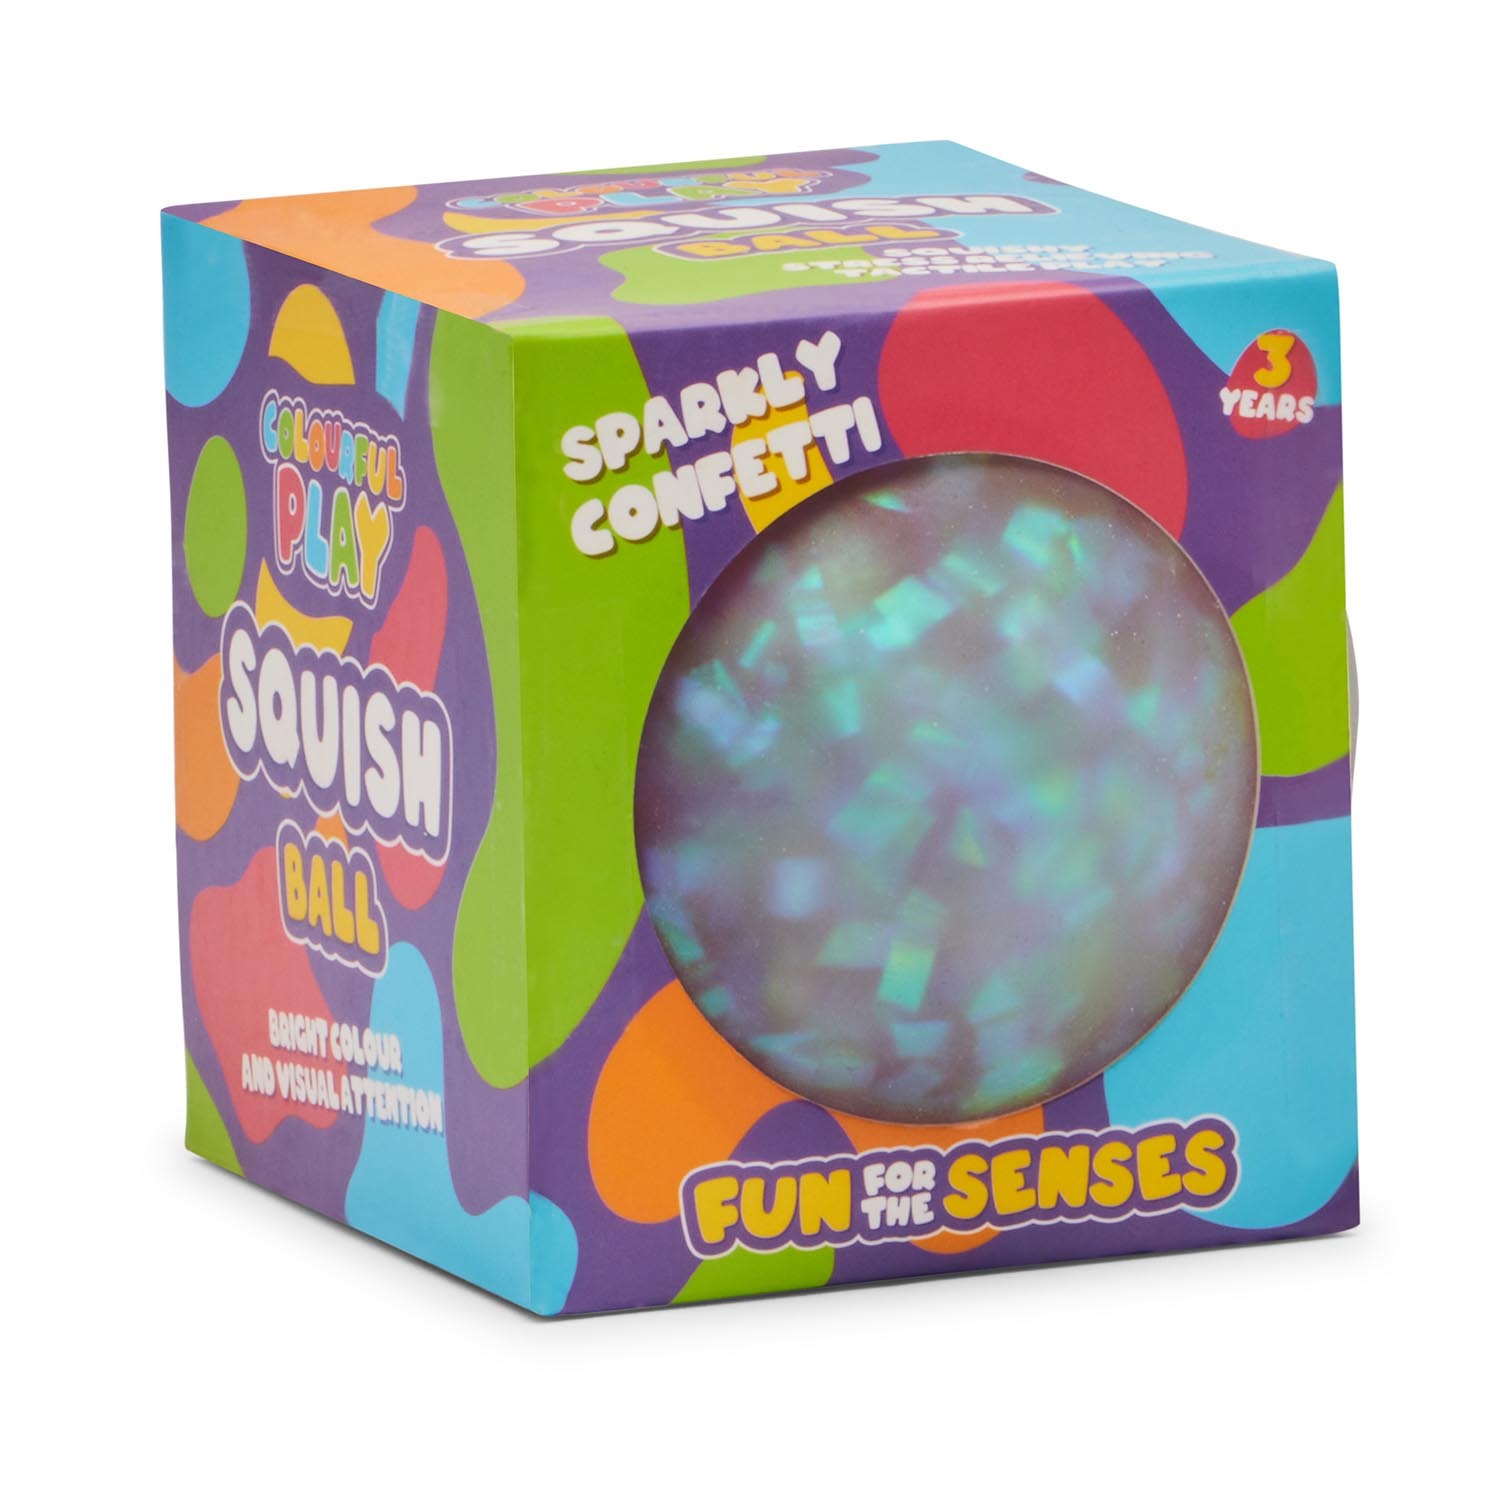 ToyMania Sparkly Confetti Squish Ball Image 1